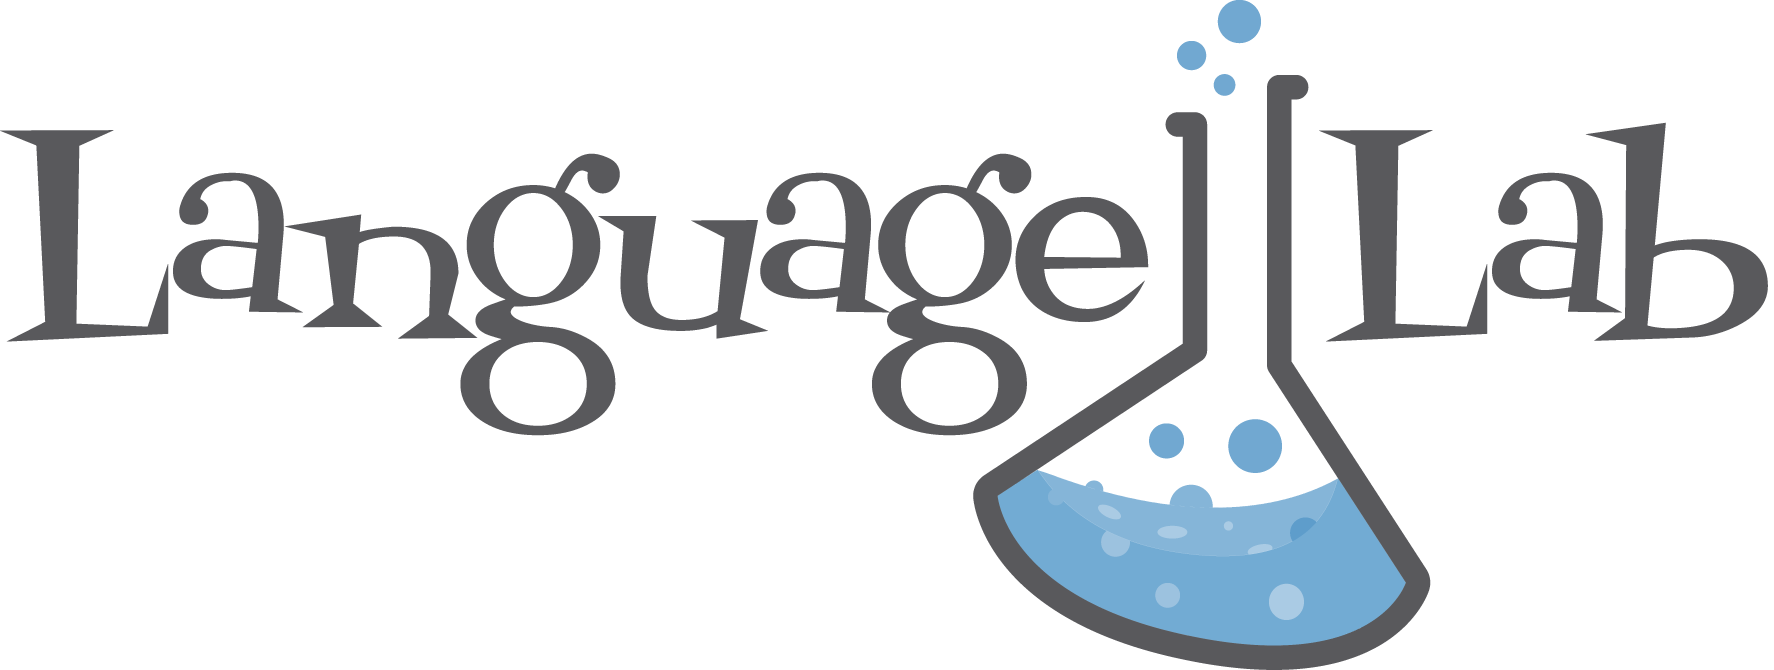 Language Lab Logo